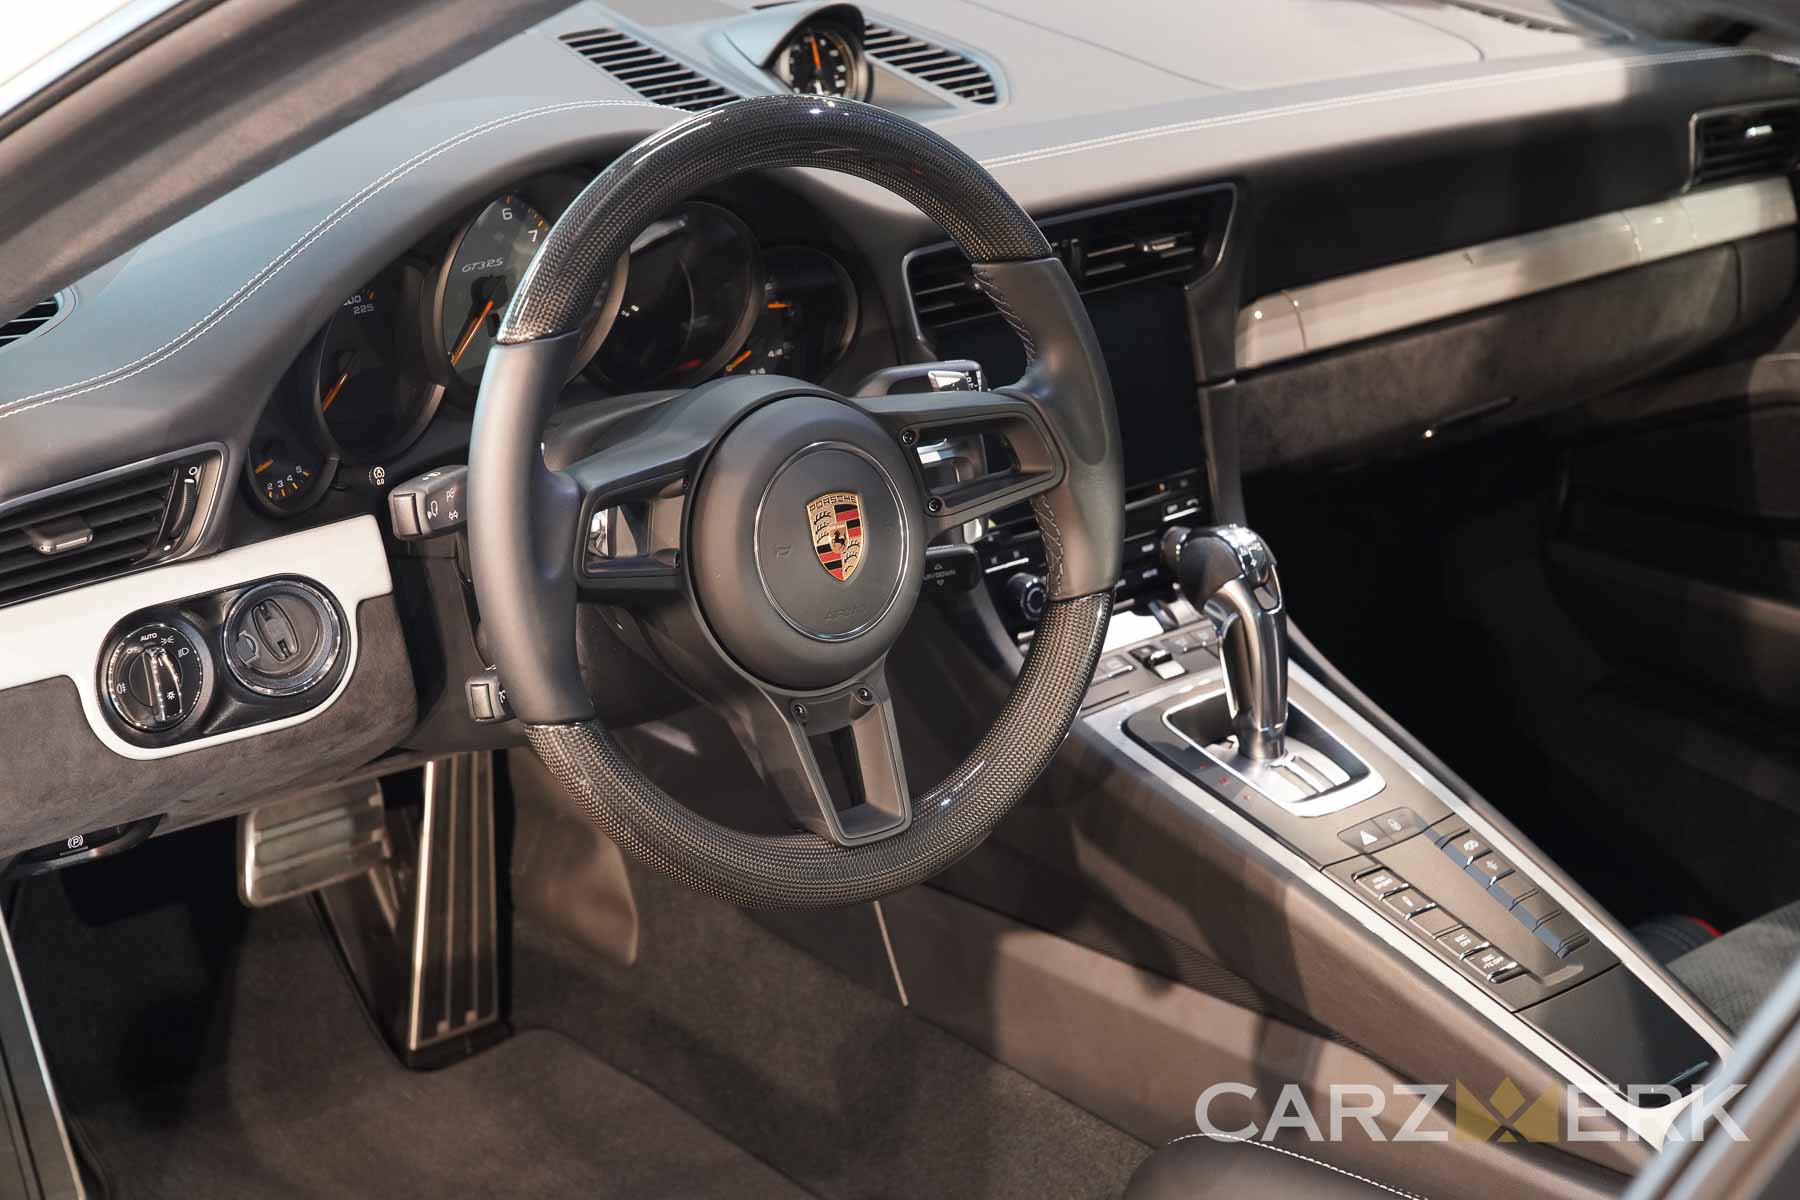 2019 Porsche GT3RS - Chalk White M9A - Interior - Carbon fiber steering wheel